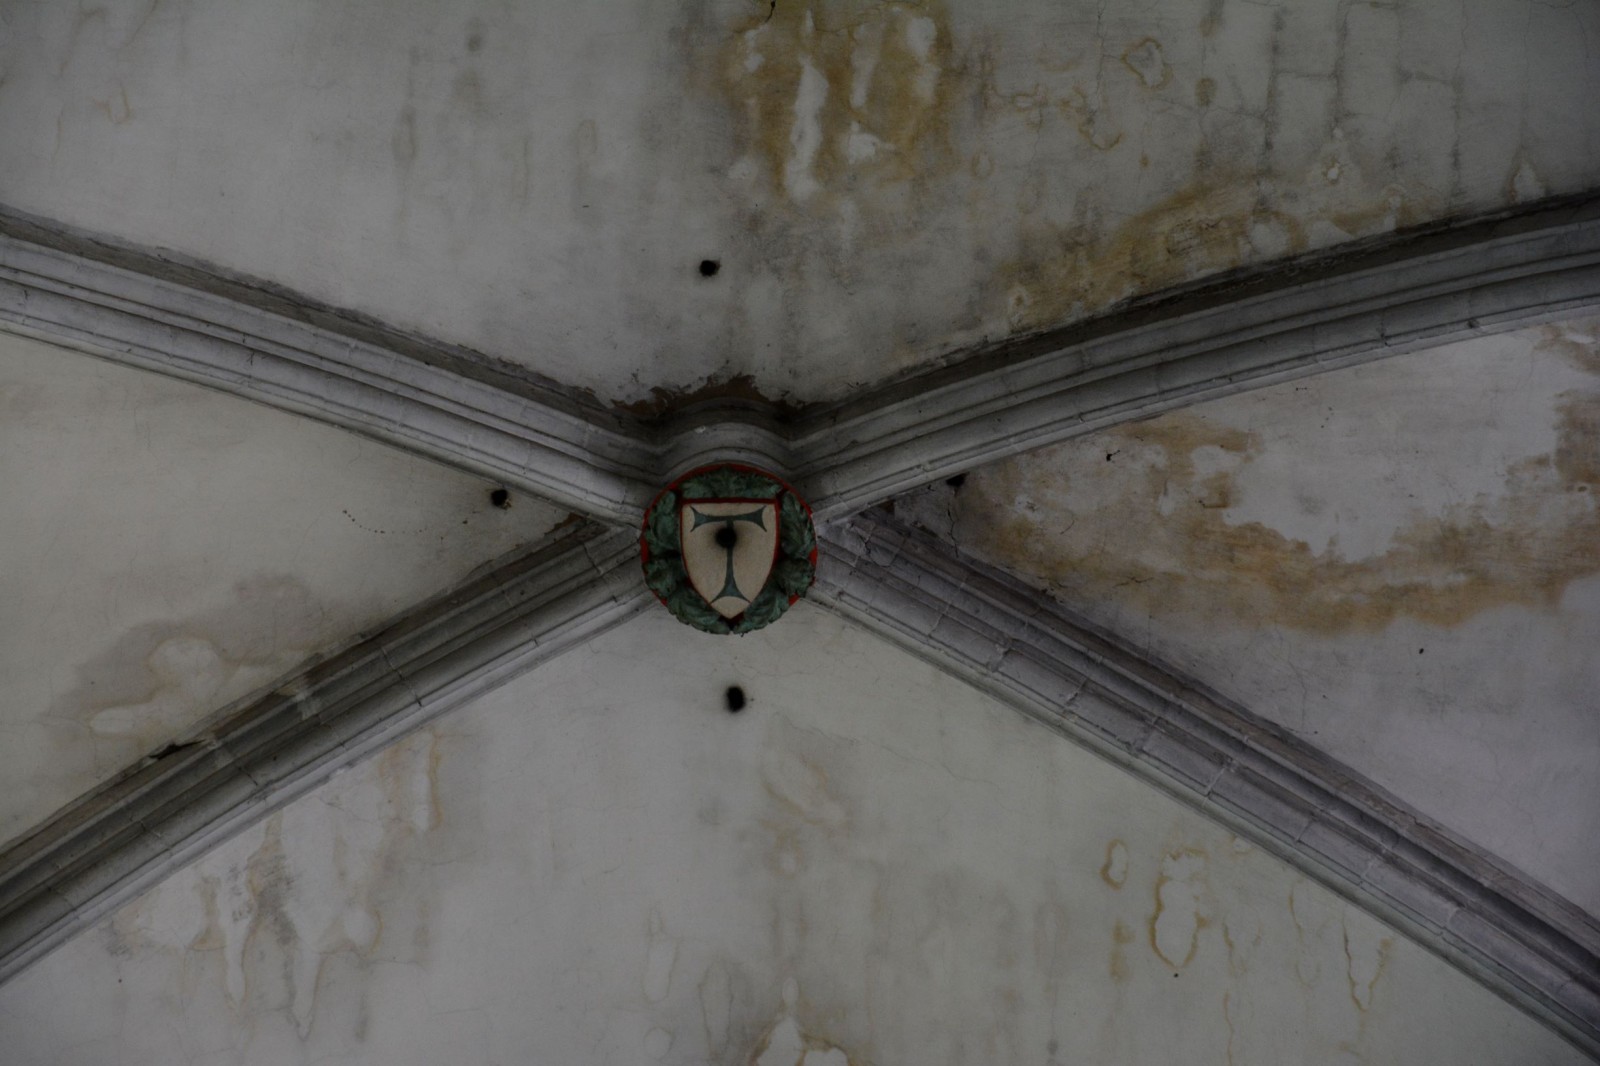 Croix de Saint-Antoine, le Tau symbole de l'ordre hospitalier de Saint-Antoine